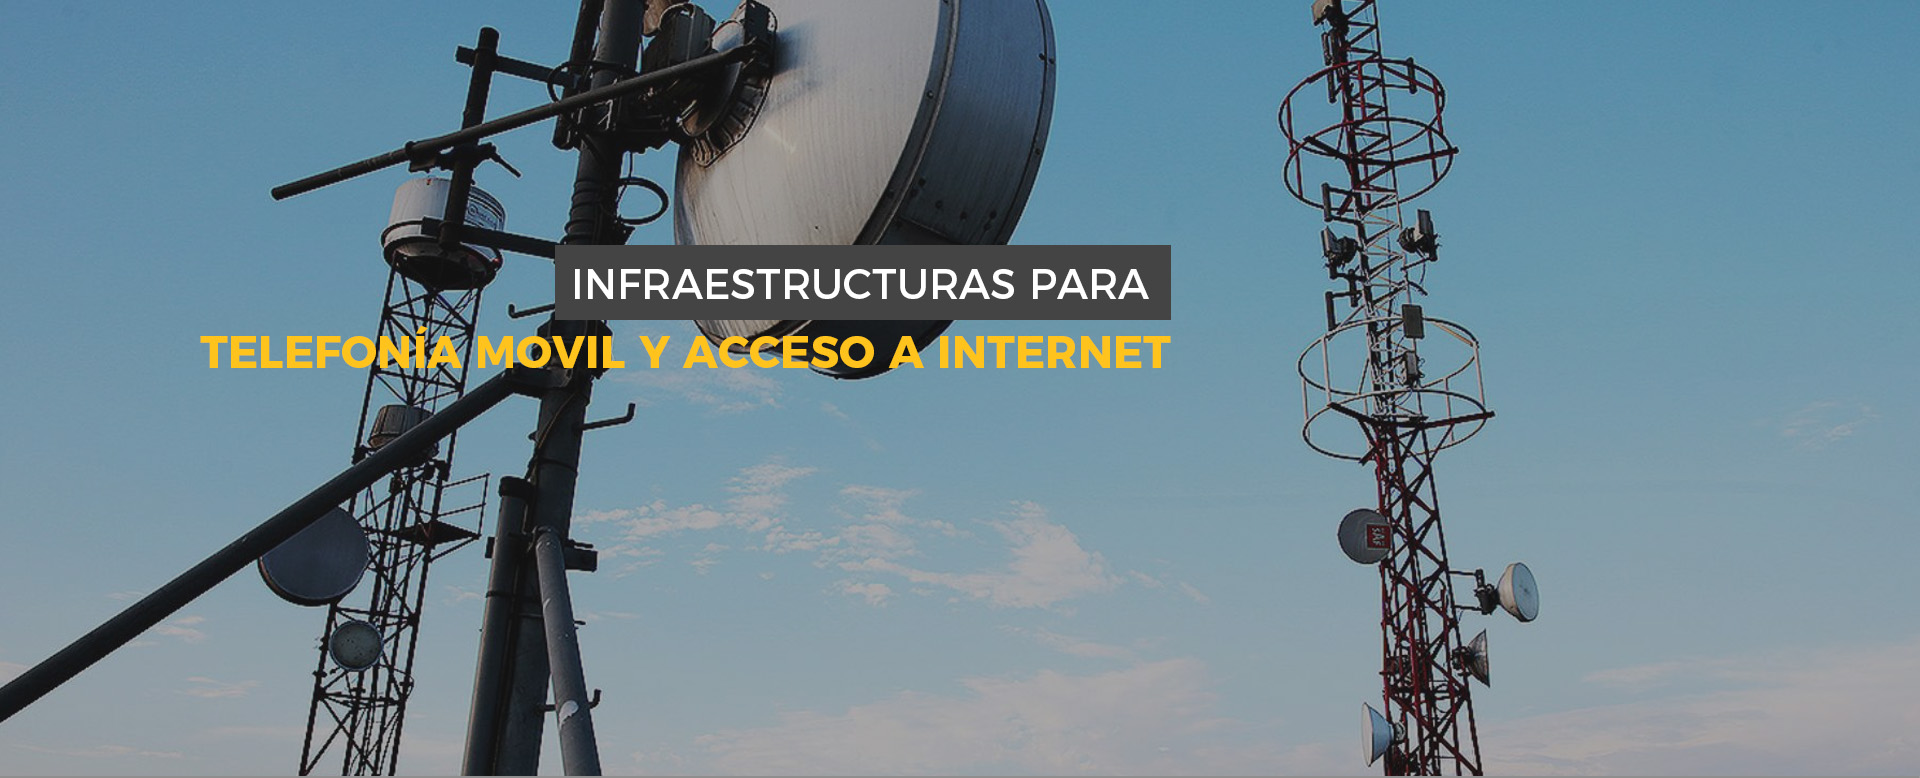 Infraestructuras para telefonía móvil e Internet.